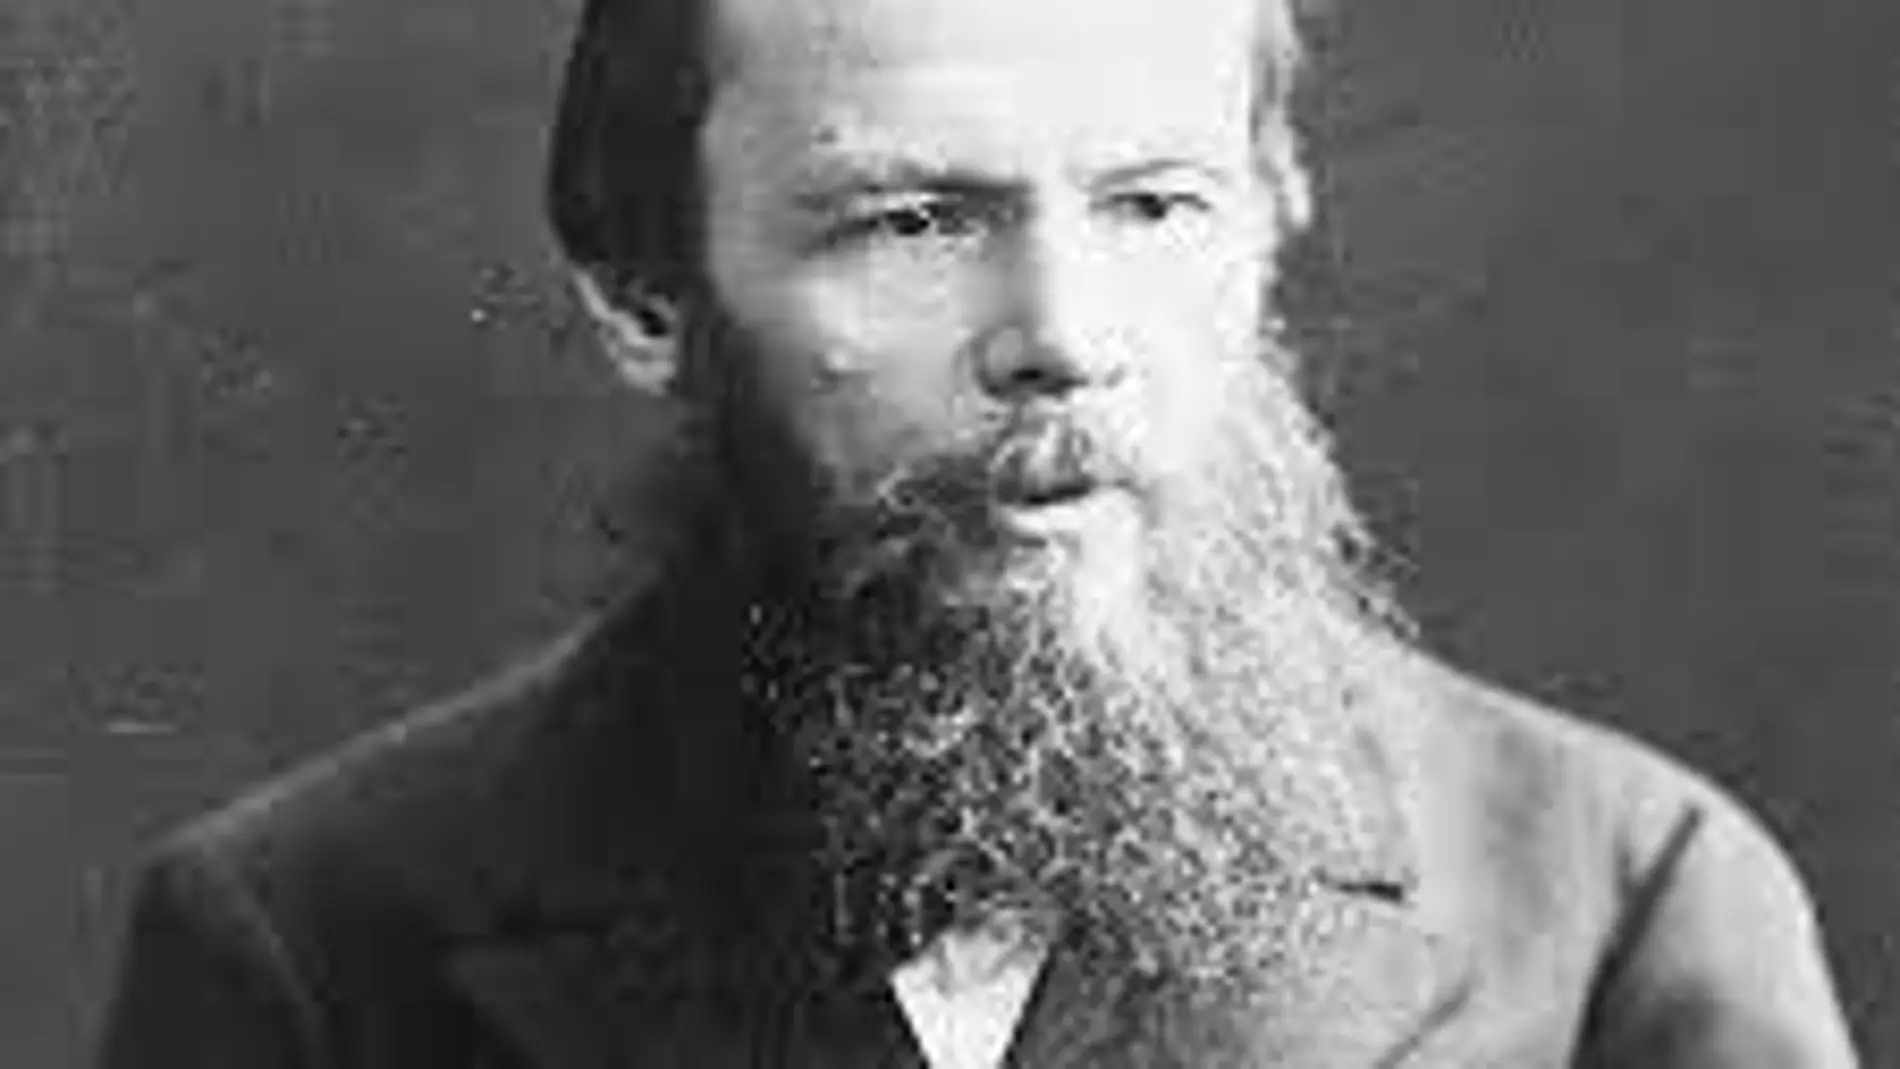 Dostoievski no solo destacó por sus libros, también por sus opiniones